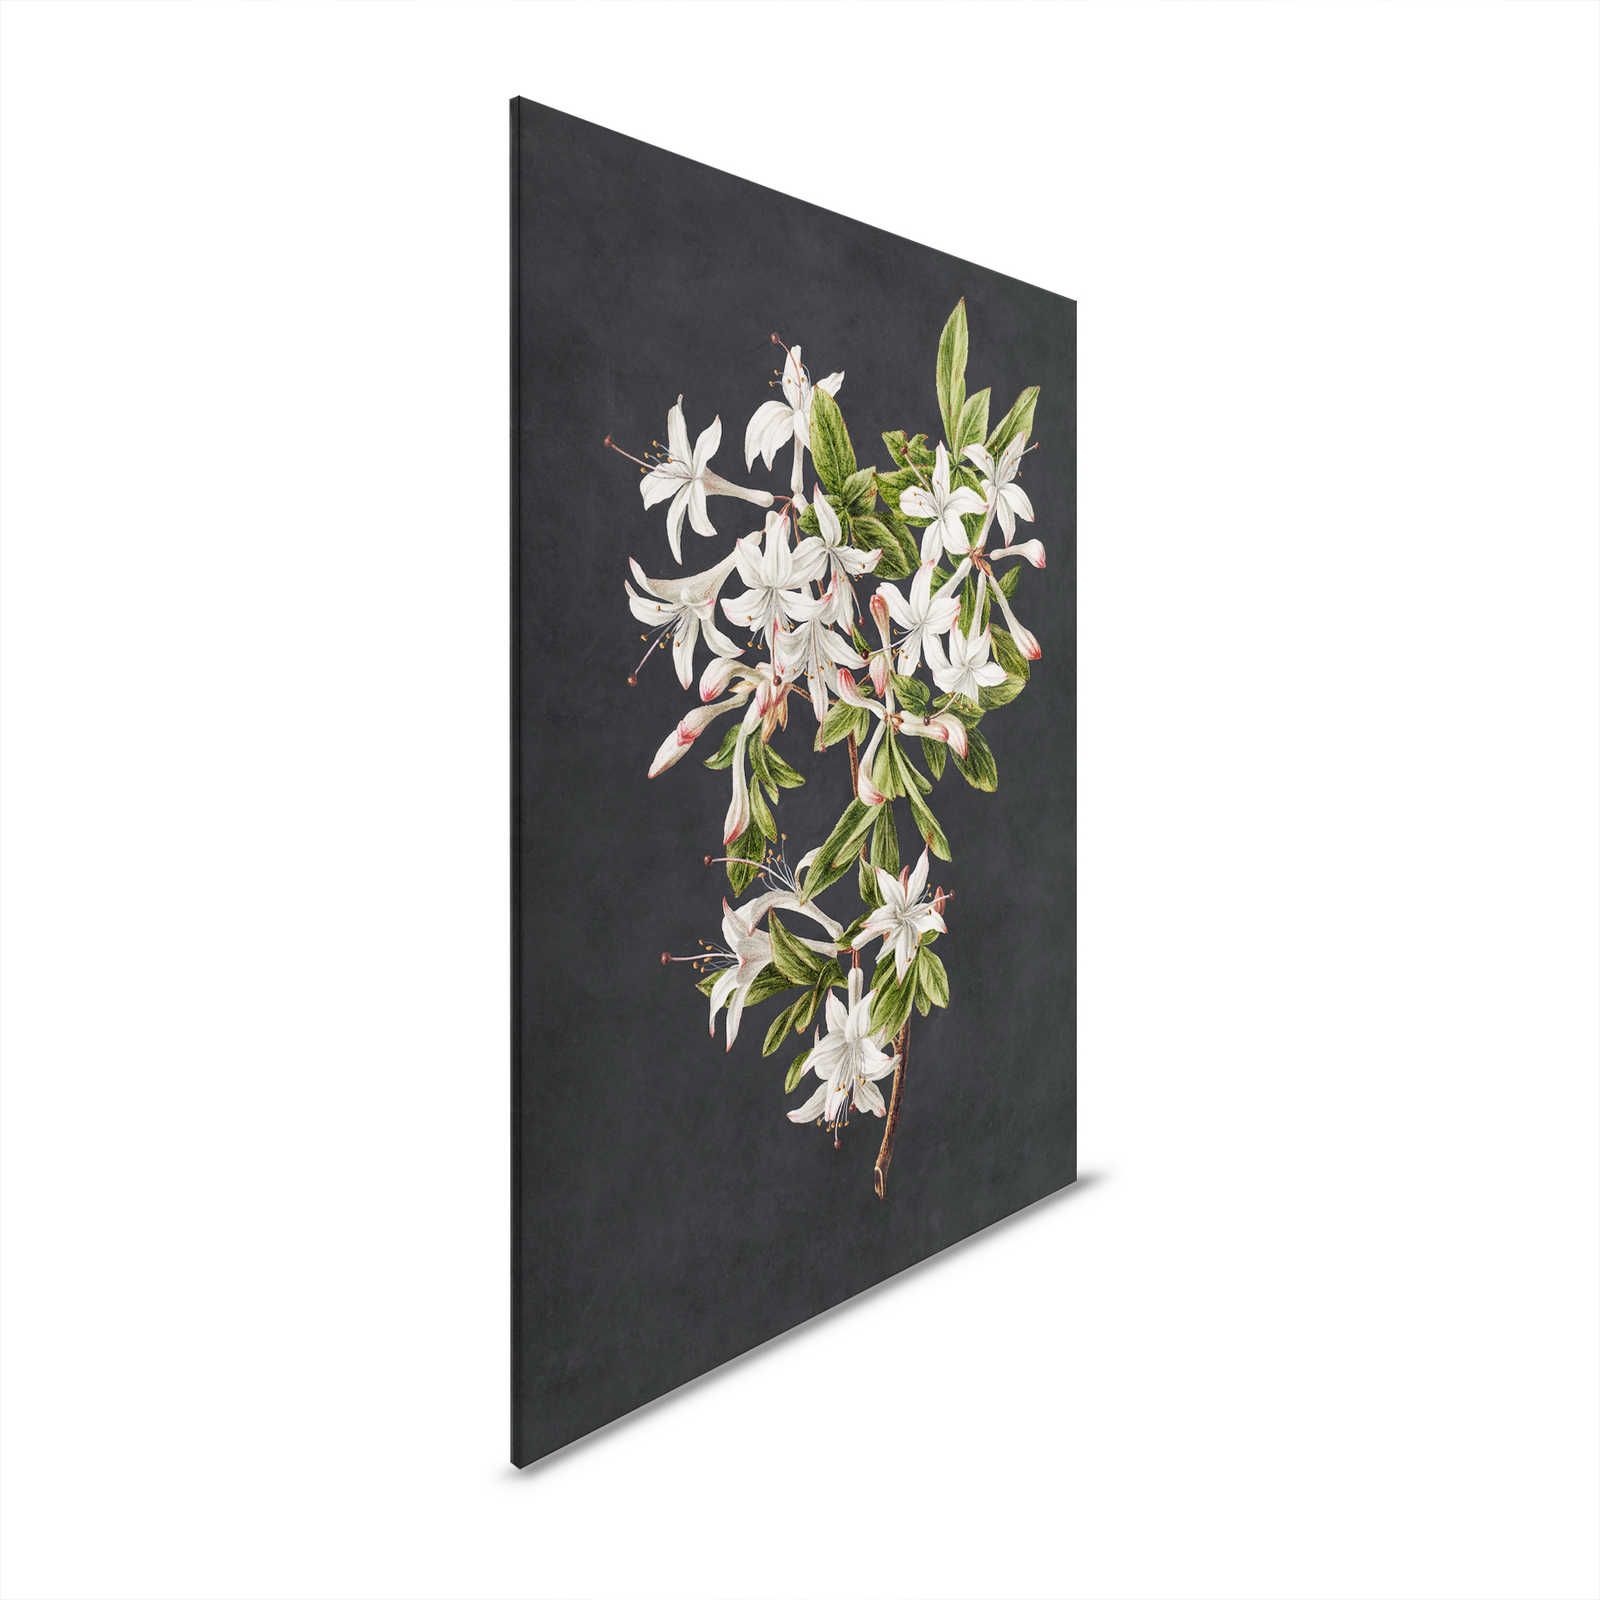 Midnight Garden 2 - Black Canvas Painting Flower Branch White Flowers - 0.60 m x 0.90 m
